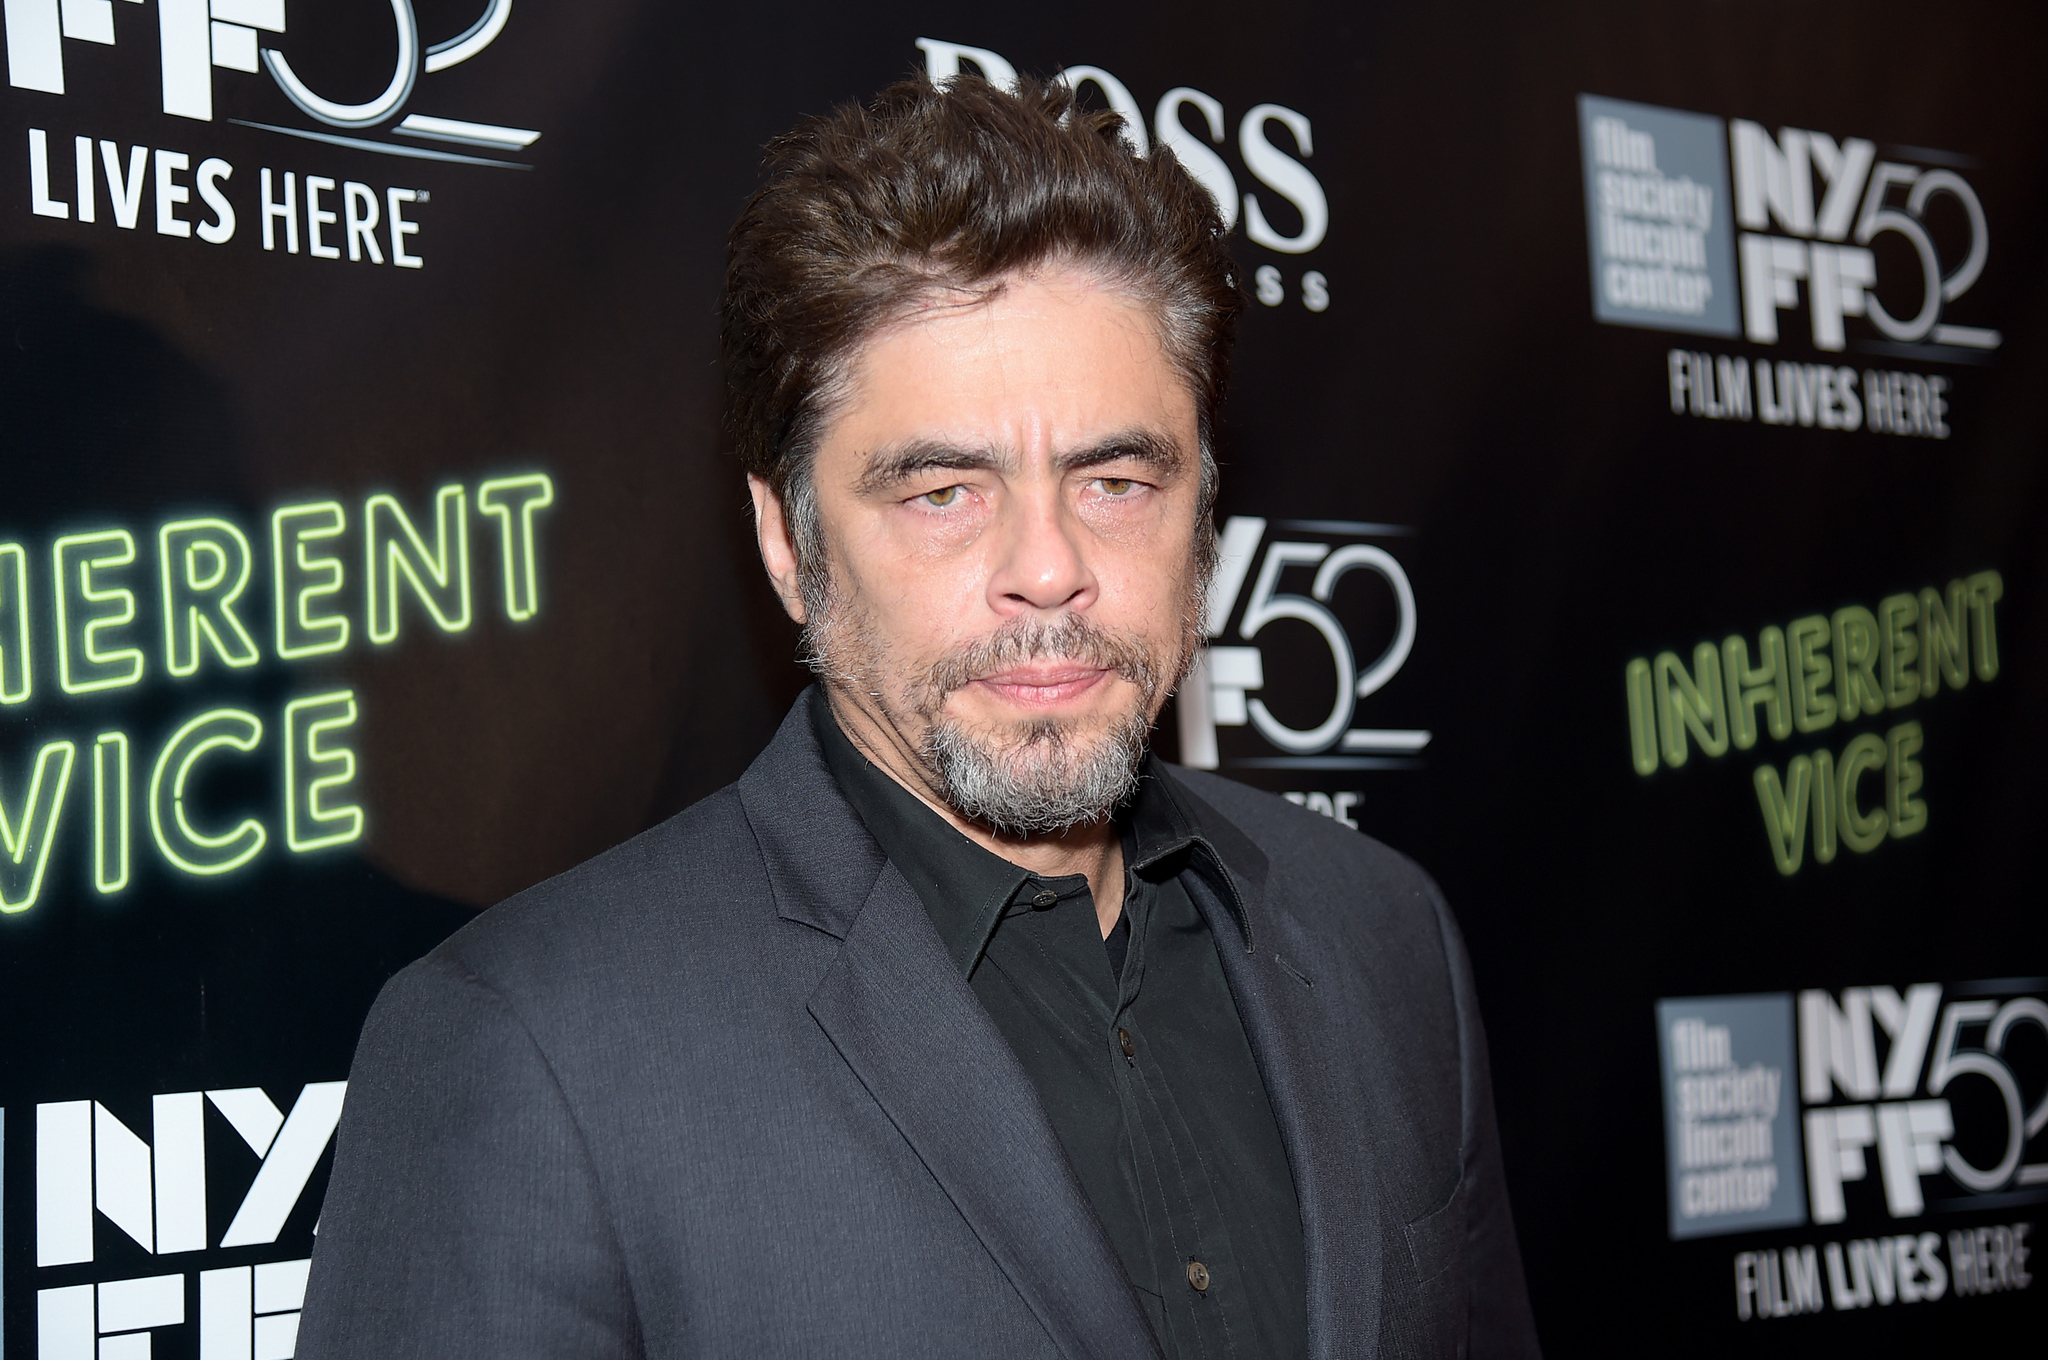 Benicio Del Toro at event of Zmogiska silpnybe (2014)